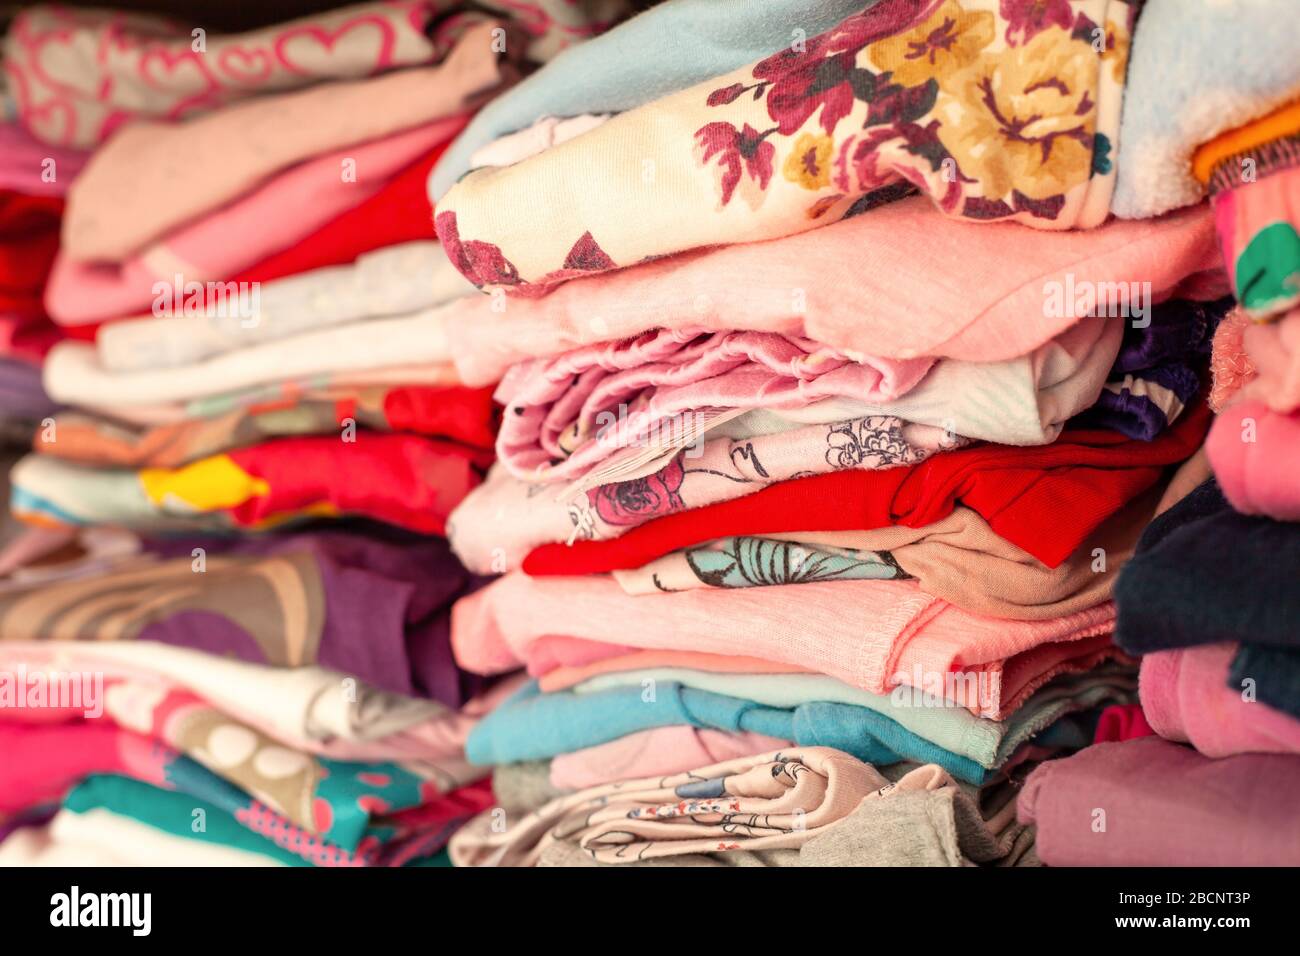 Beaucoup de vêtements pliés colorés pour enfants alignés dans des rangées dans un tiroir, placard. De nombreux vêtements simples pour enfants avec des motifs parfaitement empilés dans une armoire Banque D'Images